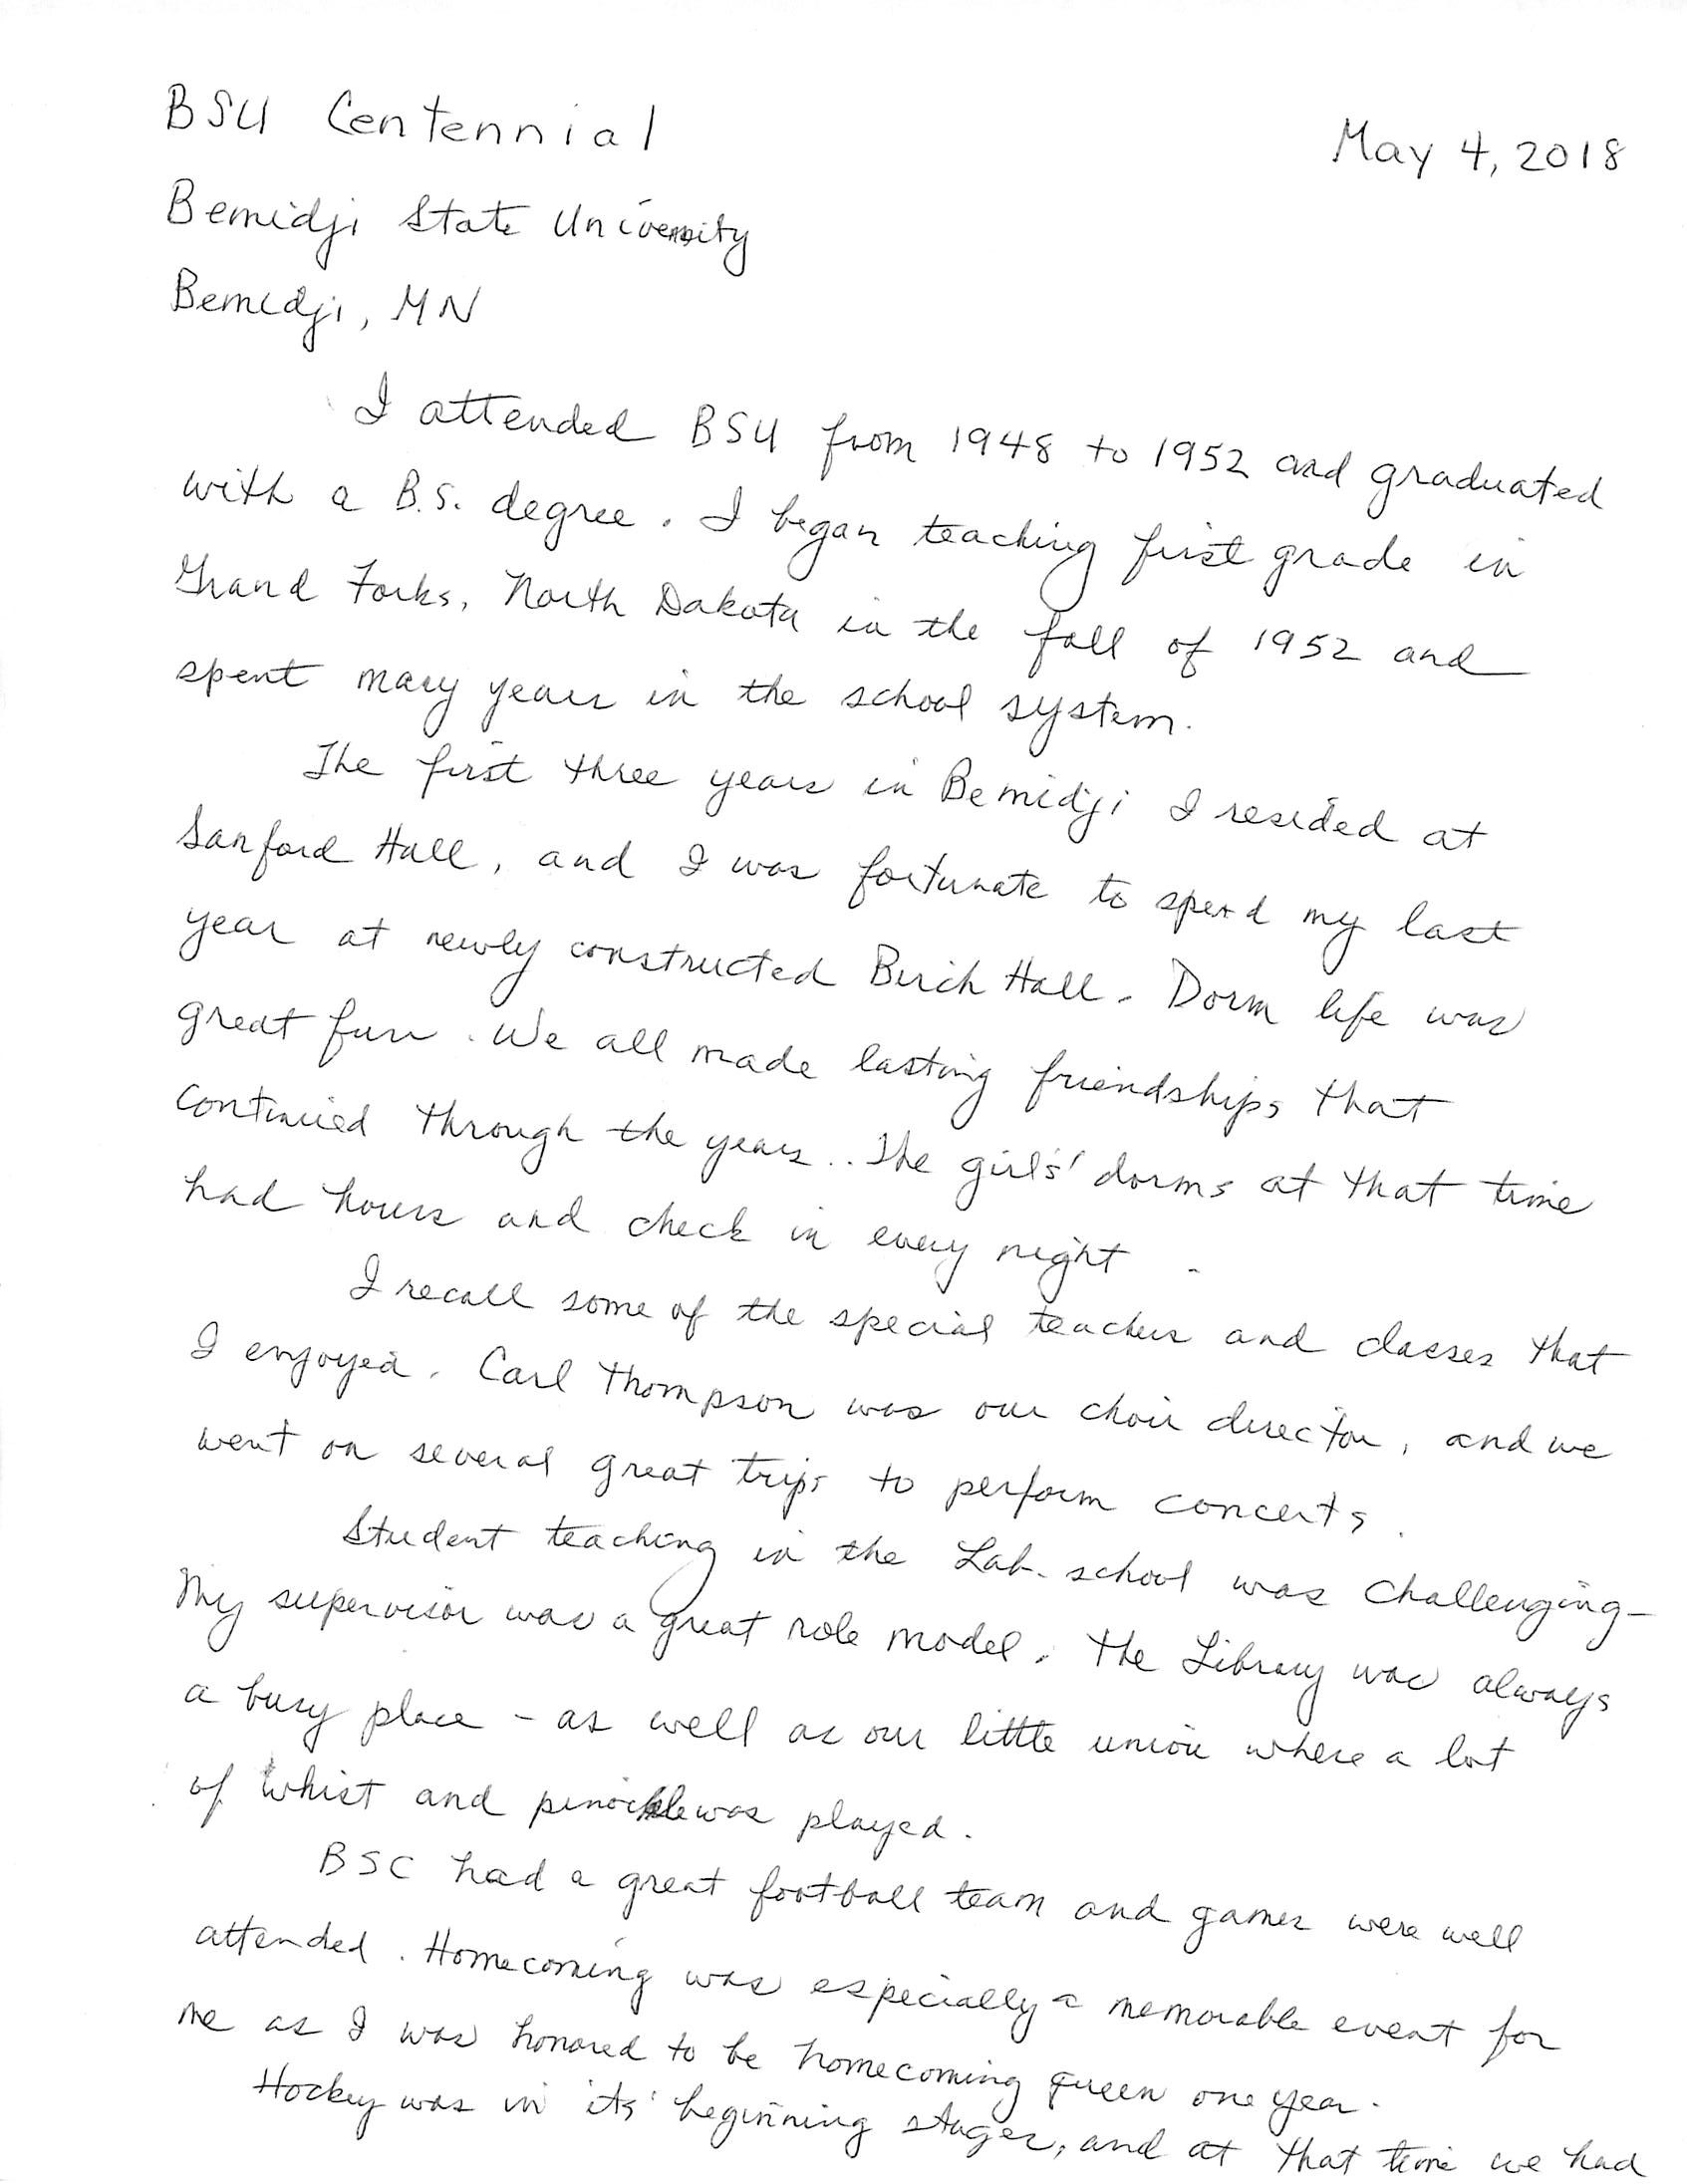 Written letter from '52 alumna.